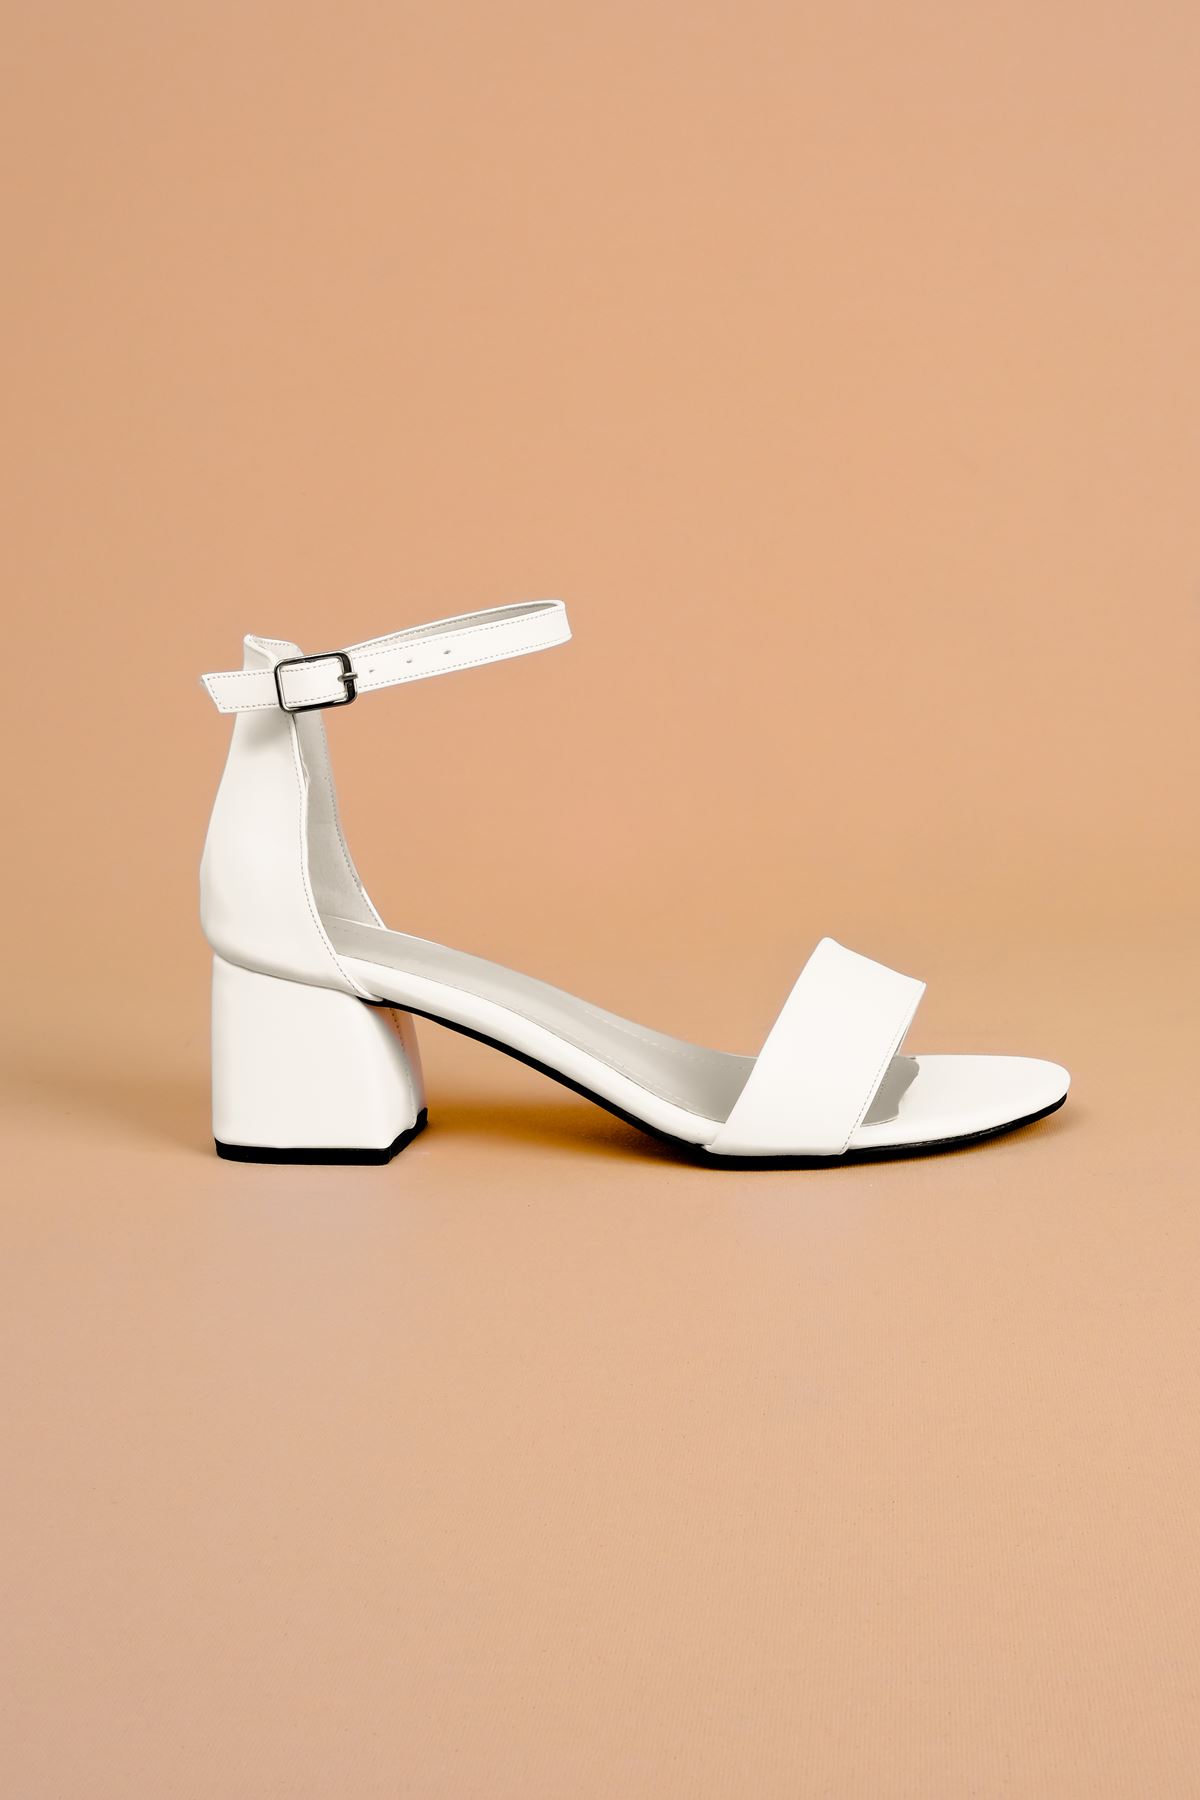 Thayer Kadın Topuklu Ayakkabı Tek Bant-beyaz